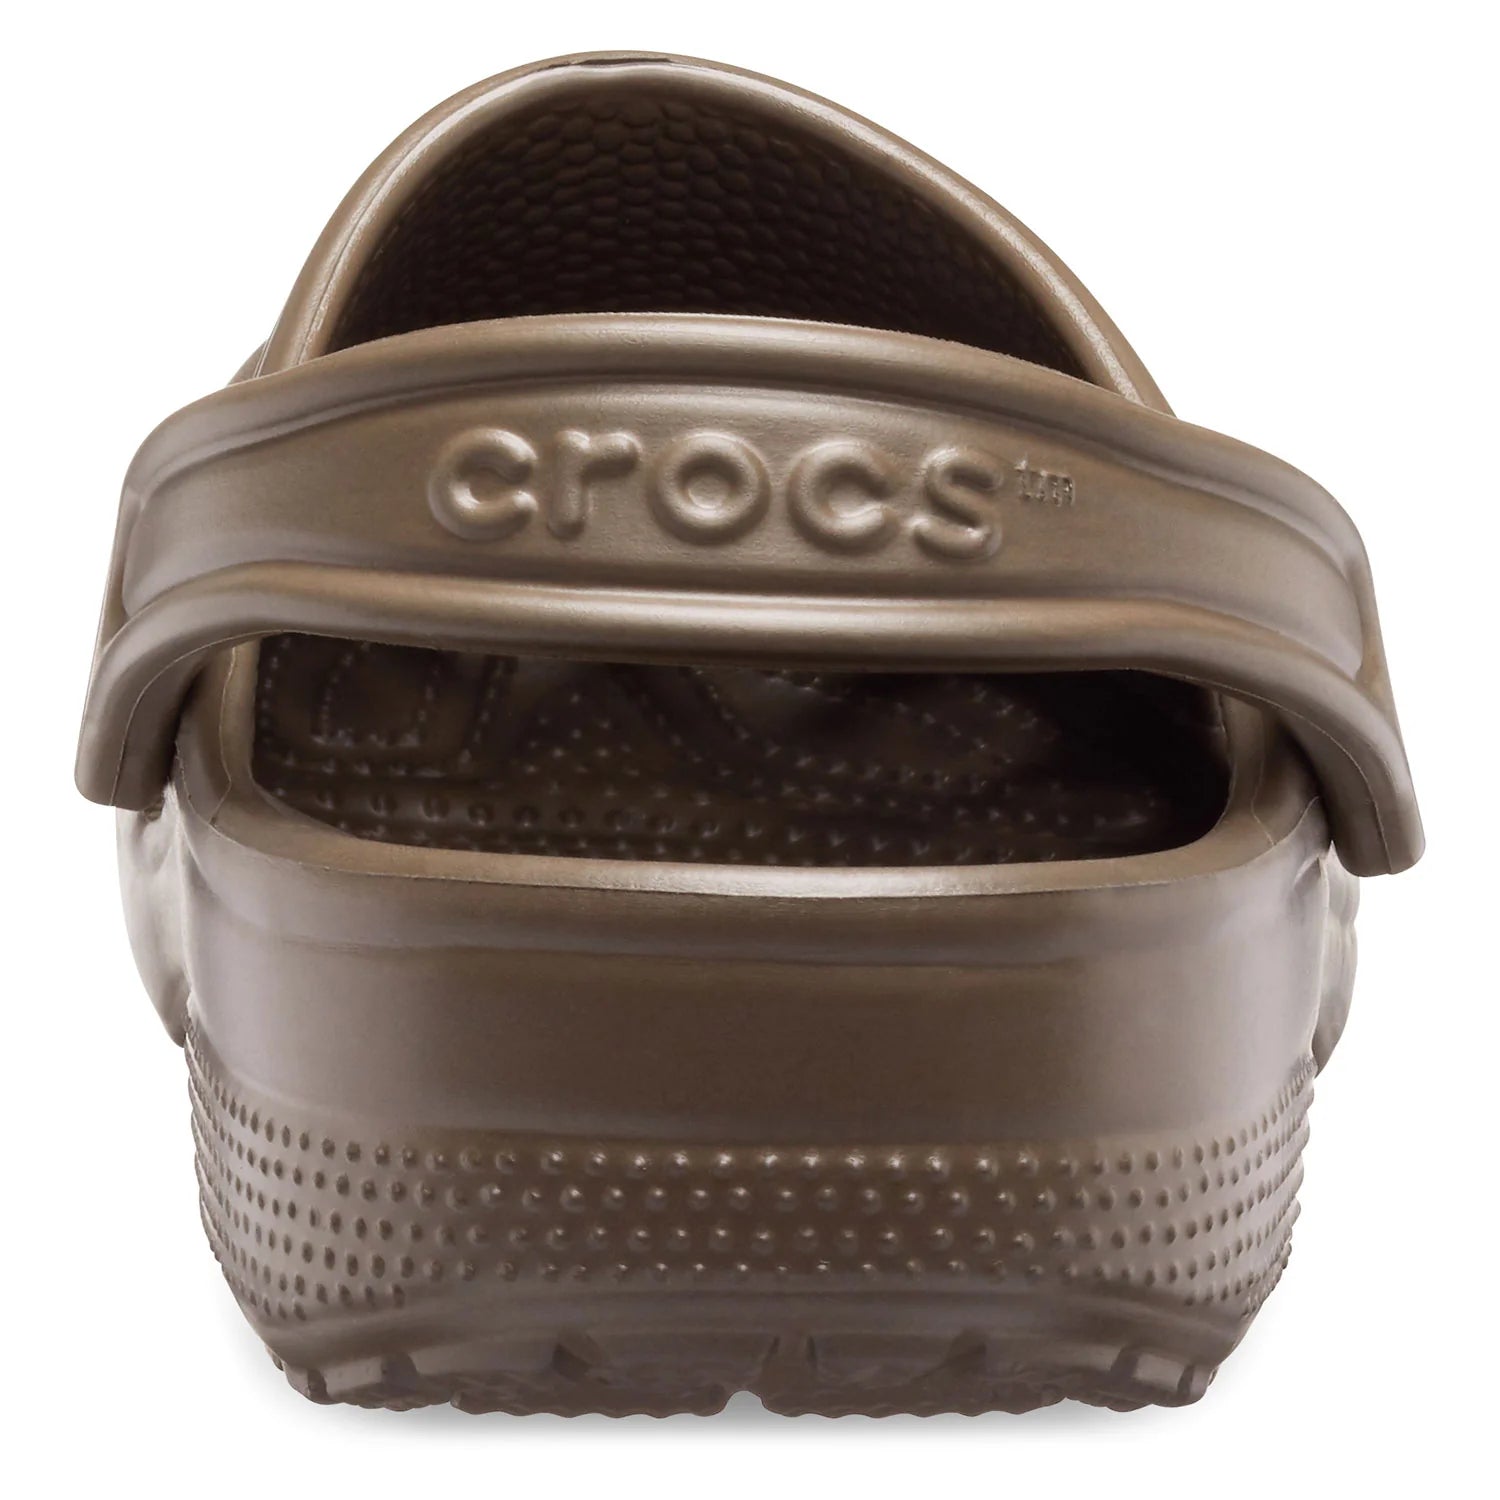 Crocs Classic Clog Sandal